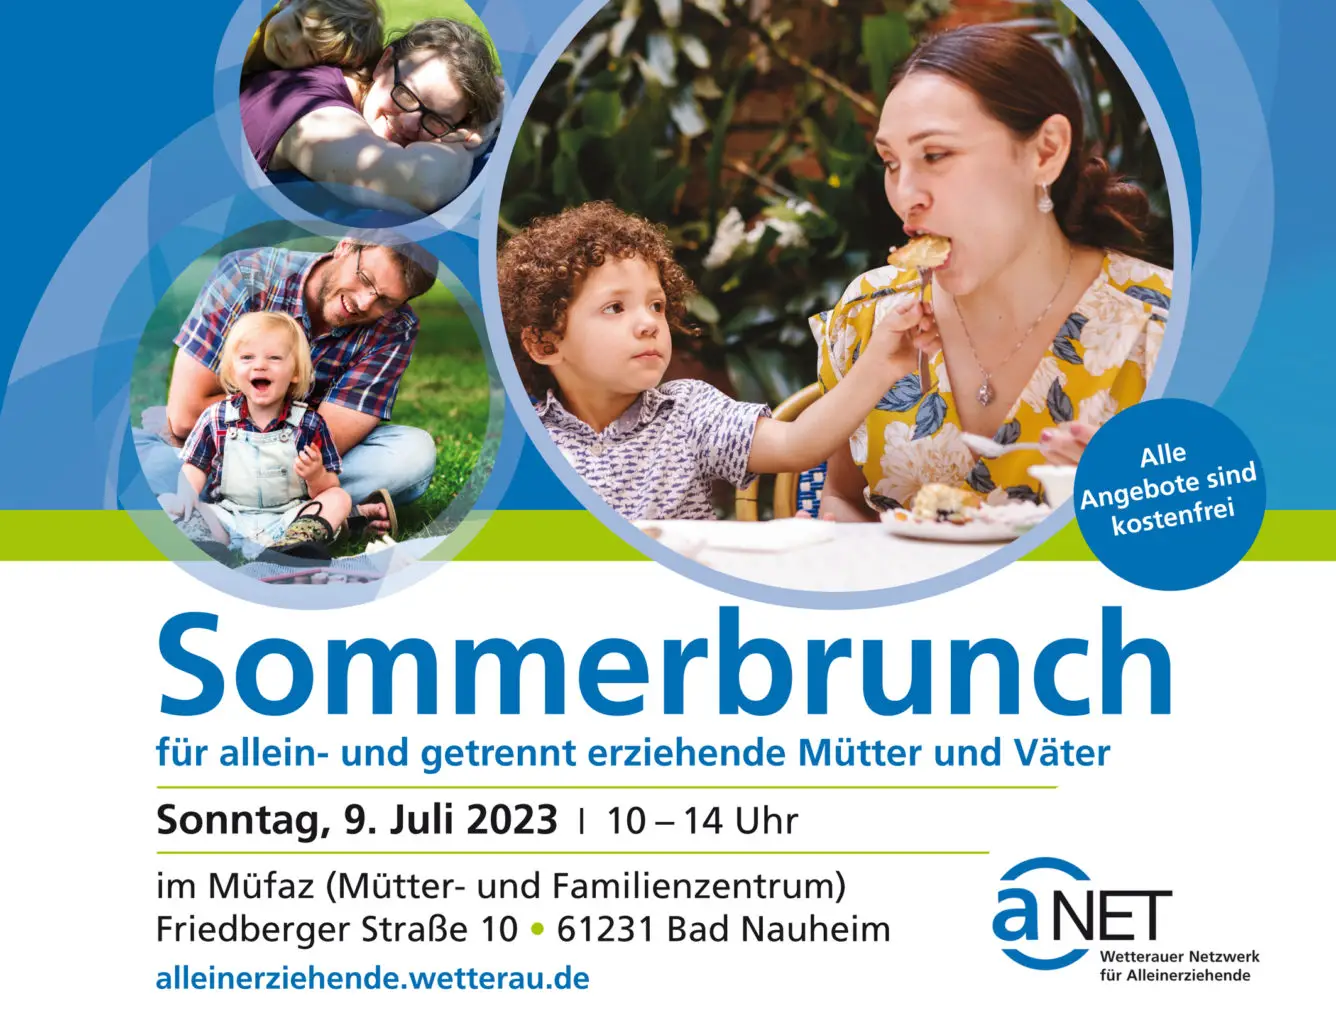 Tolle Veranstaltung: Sommerbrunch für allein- und getrennt erziehende Mütter und Väter am Sonntag, den 9. Juli 2023 von 10-14 Uhr im Müfaz Bad Nauheim